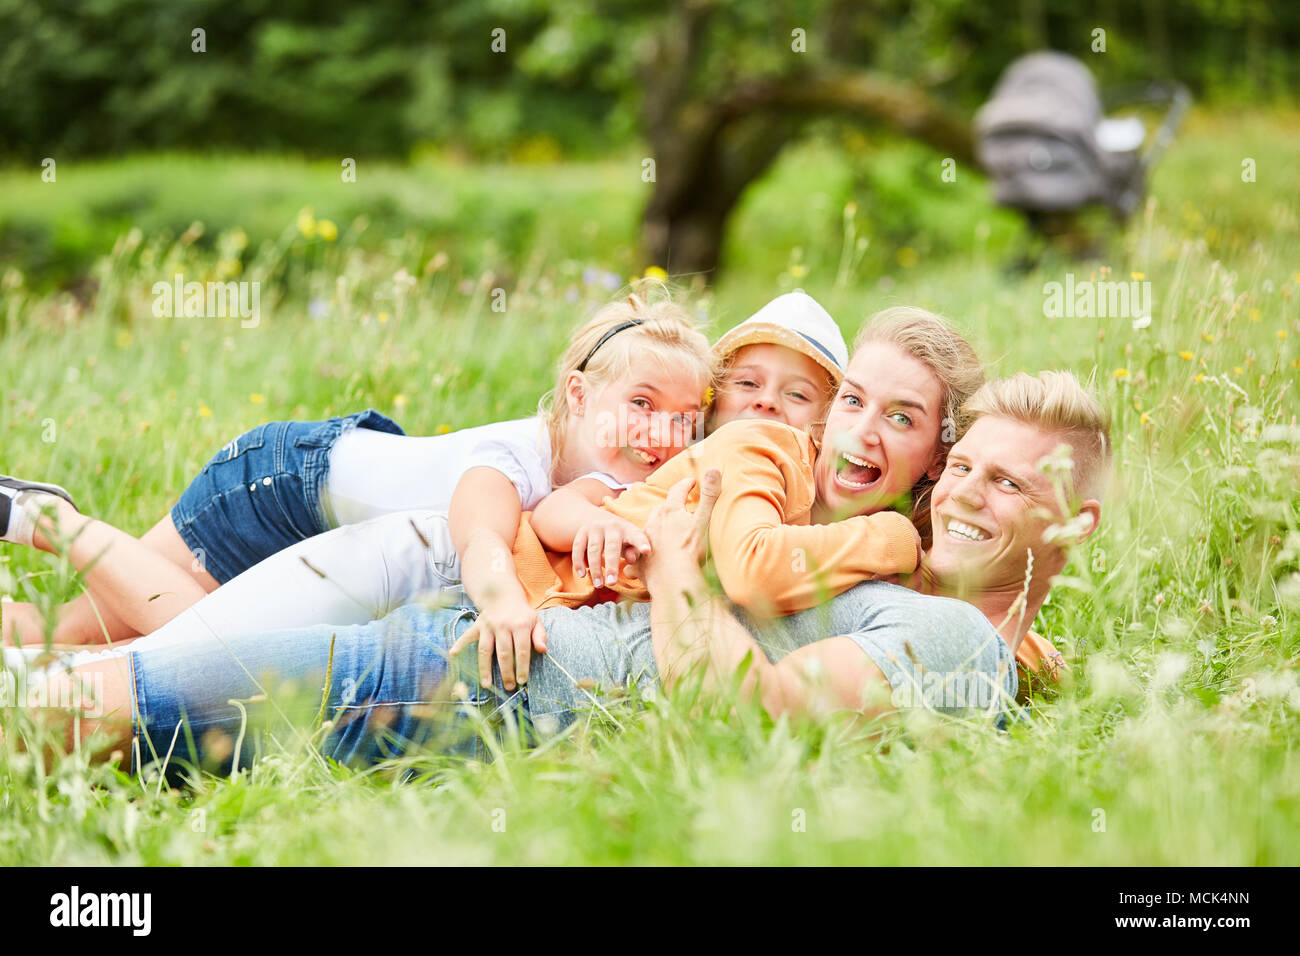 Les parents et les enfants s'amuser et rire ensemble dans l'herbe dans le jardin Banque D'Images